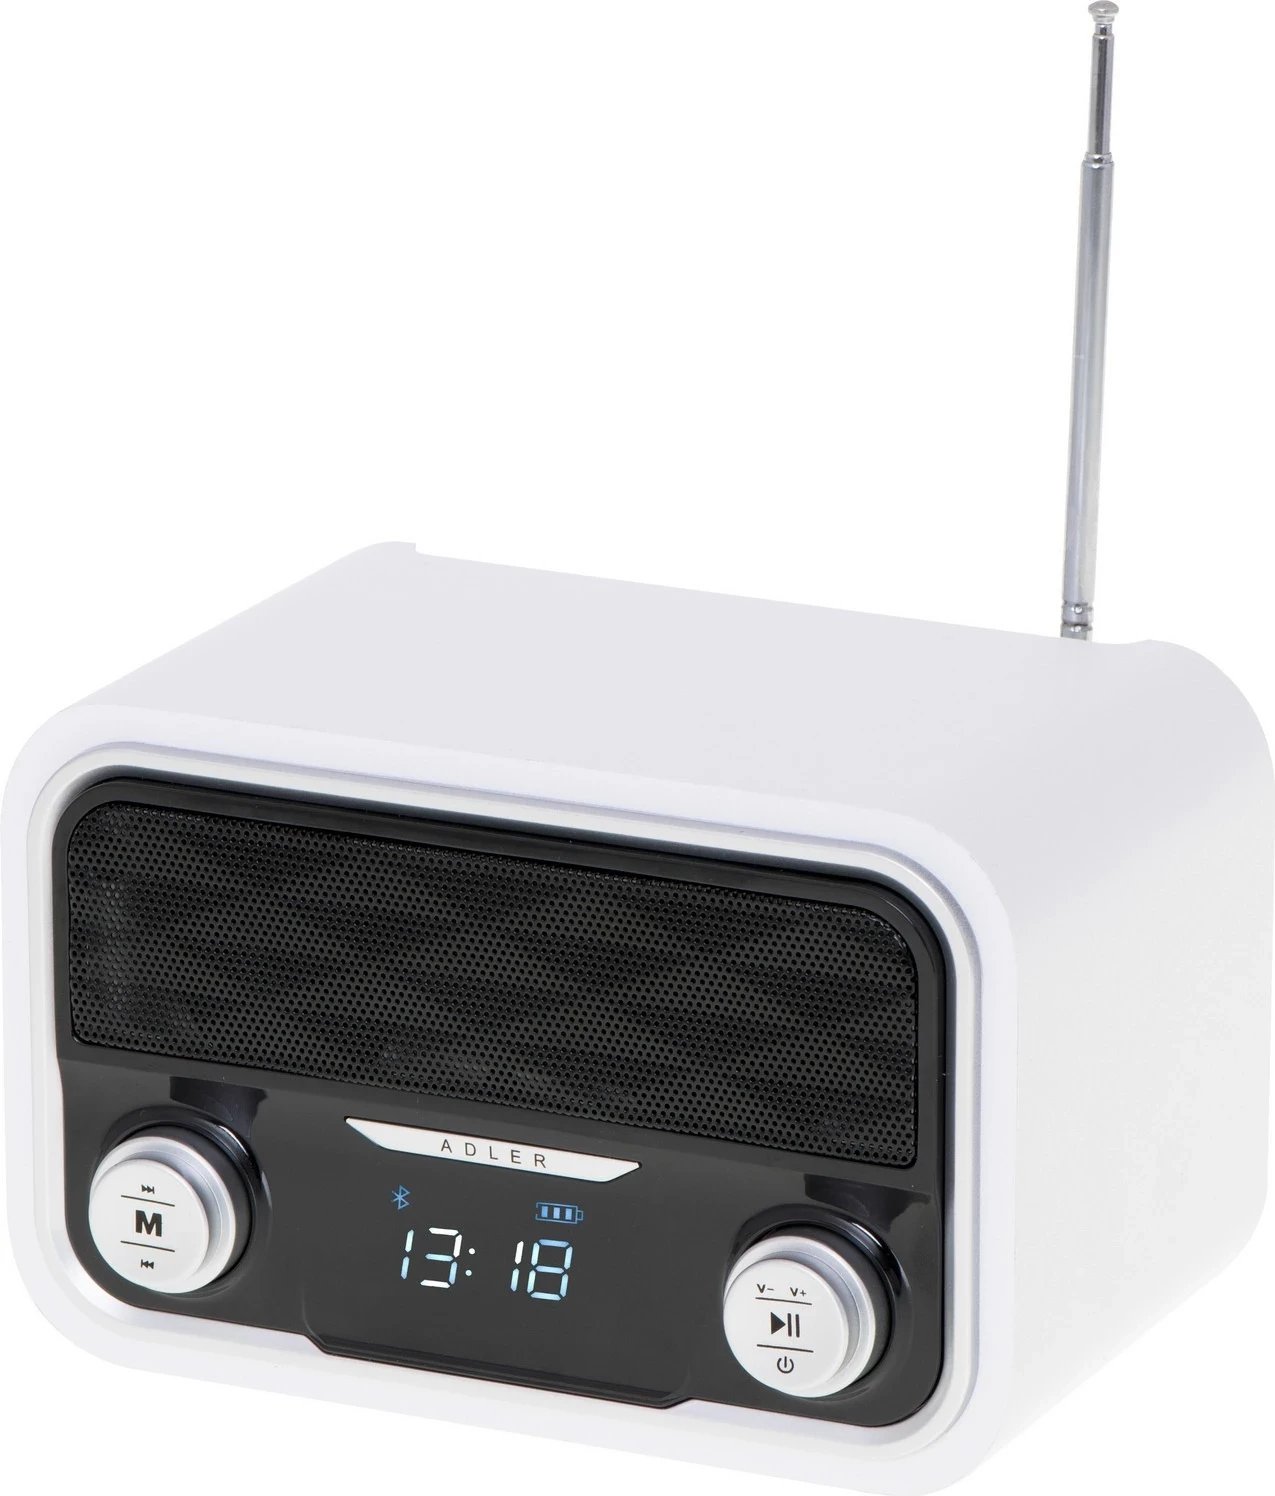 Radio Adler AD 1185, Bluetooth, FM, USB, SD, microUSB, bardhë e zezë